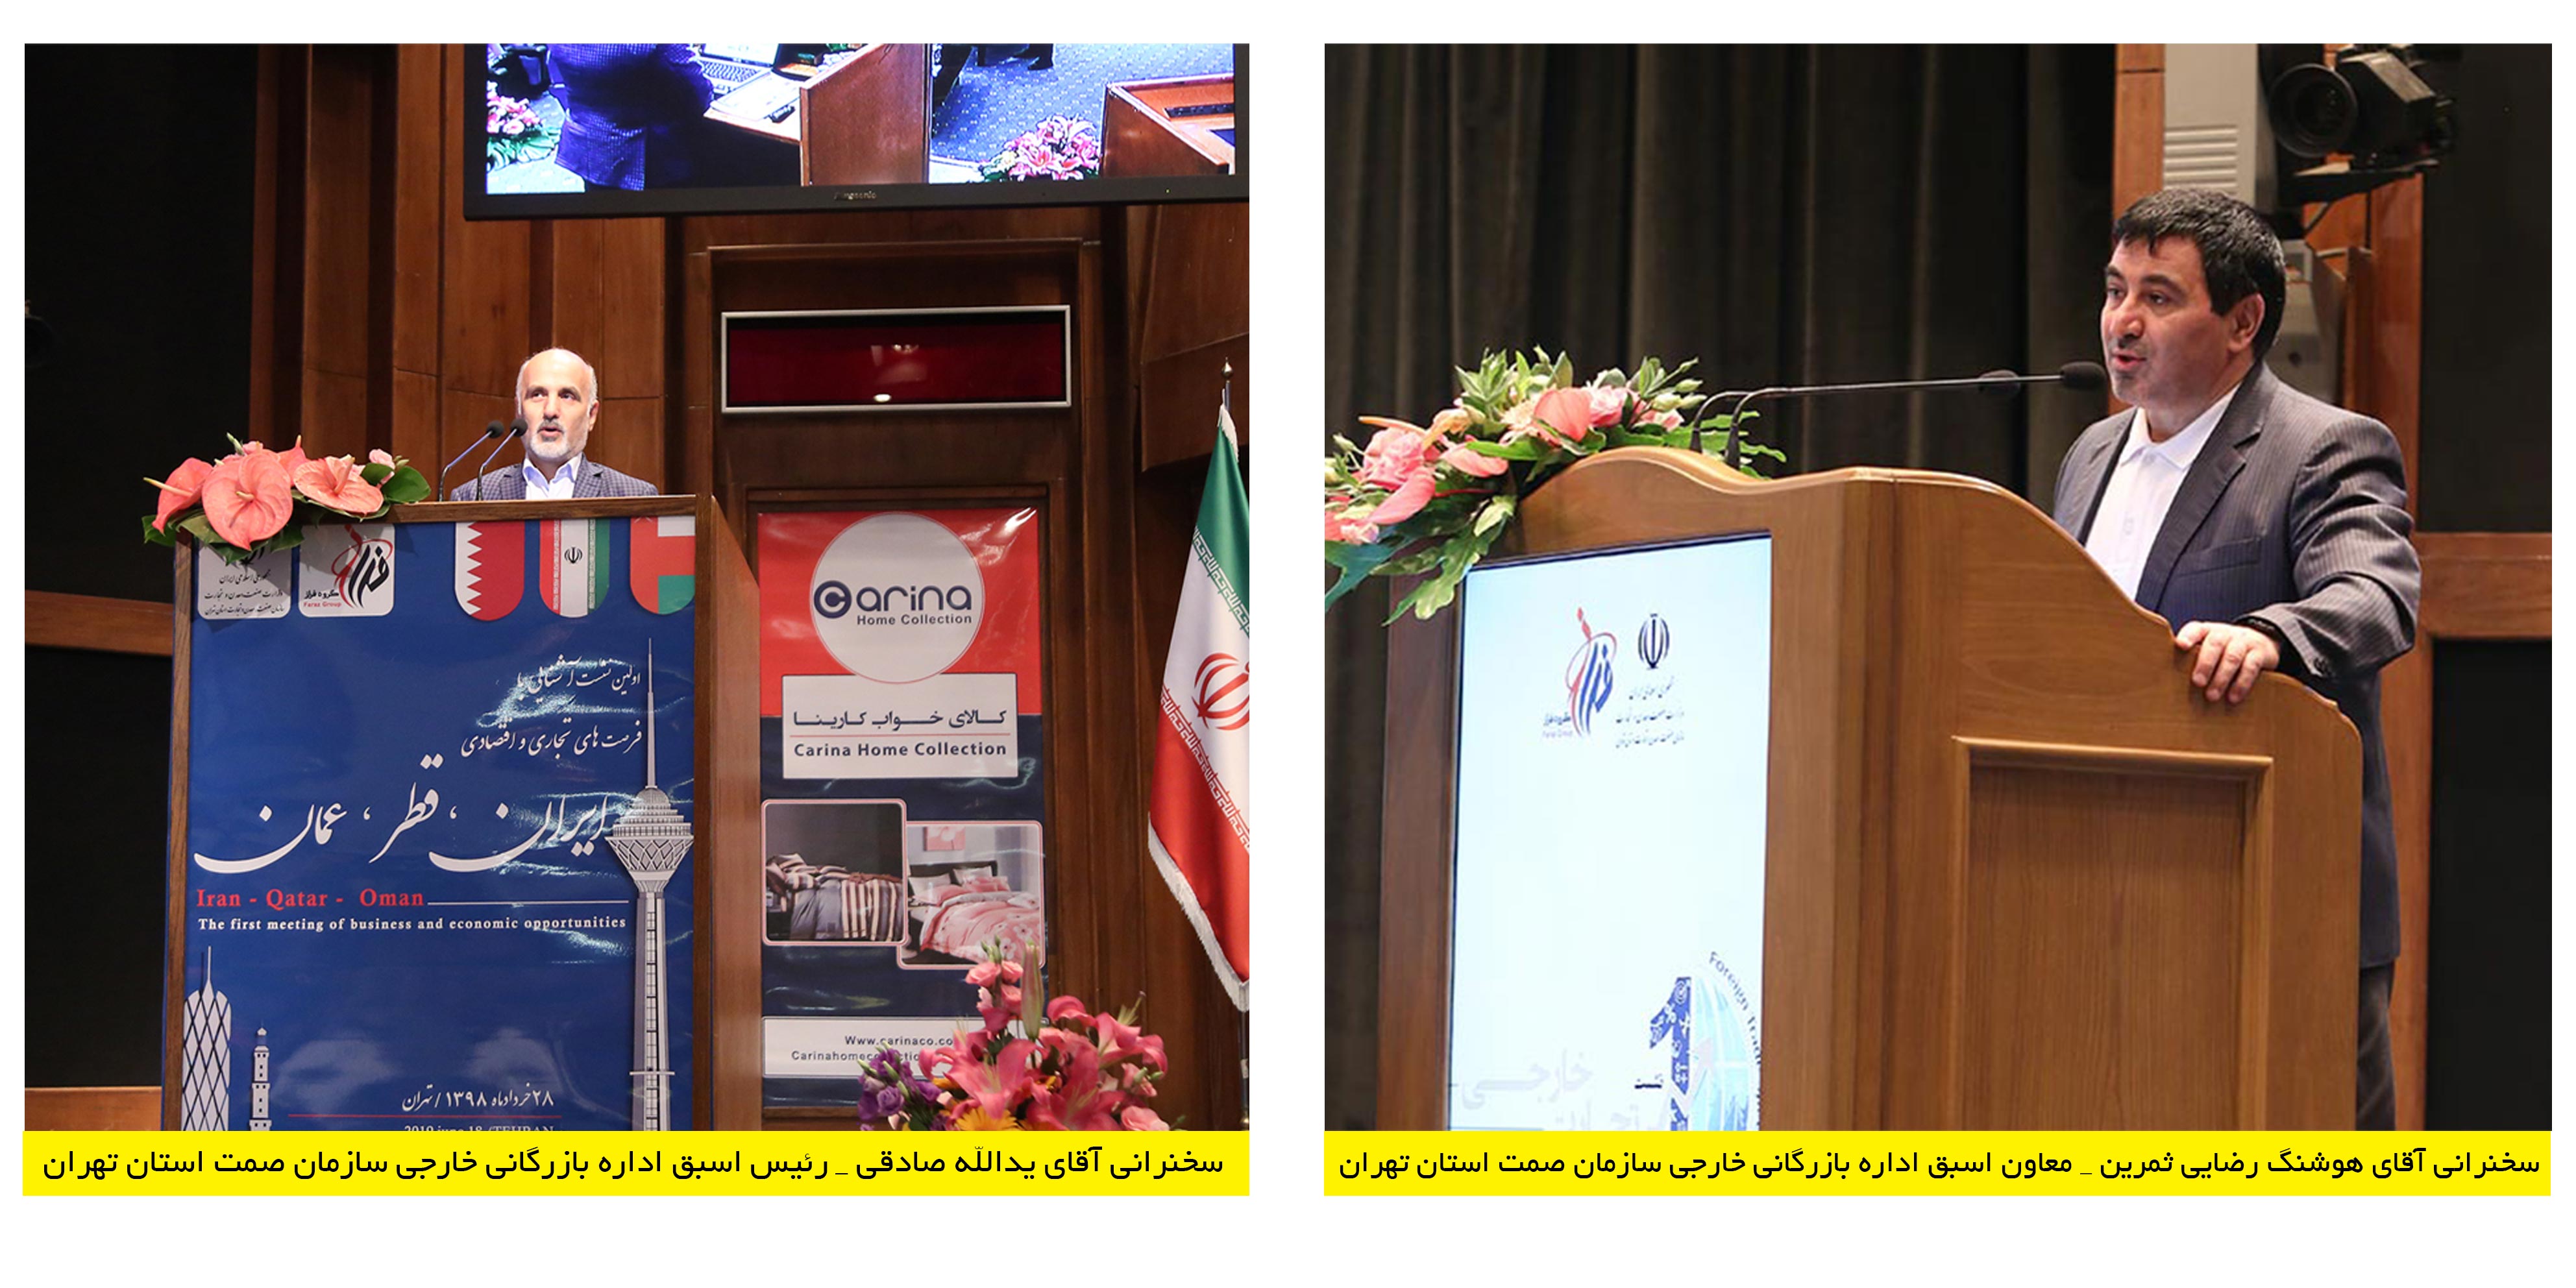 اولین نشست توسعه روابط بازرگانی با هوش اقتصادی و هوش تجاری  ///  اولین نشست آشنایی با فرصت های تجاری و اقتصادی ایران ، قطر ، عمان